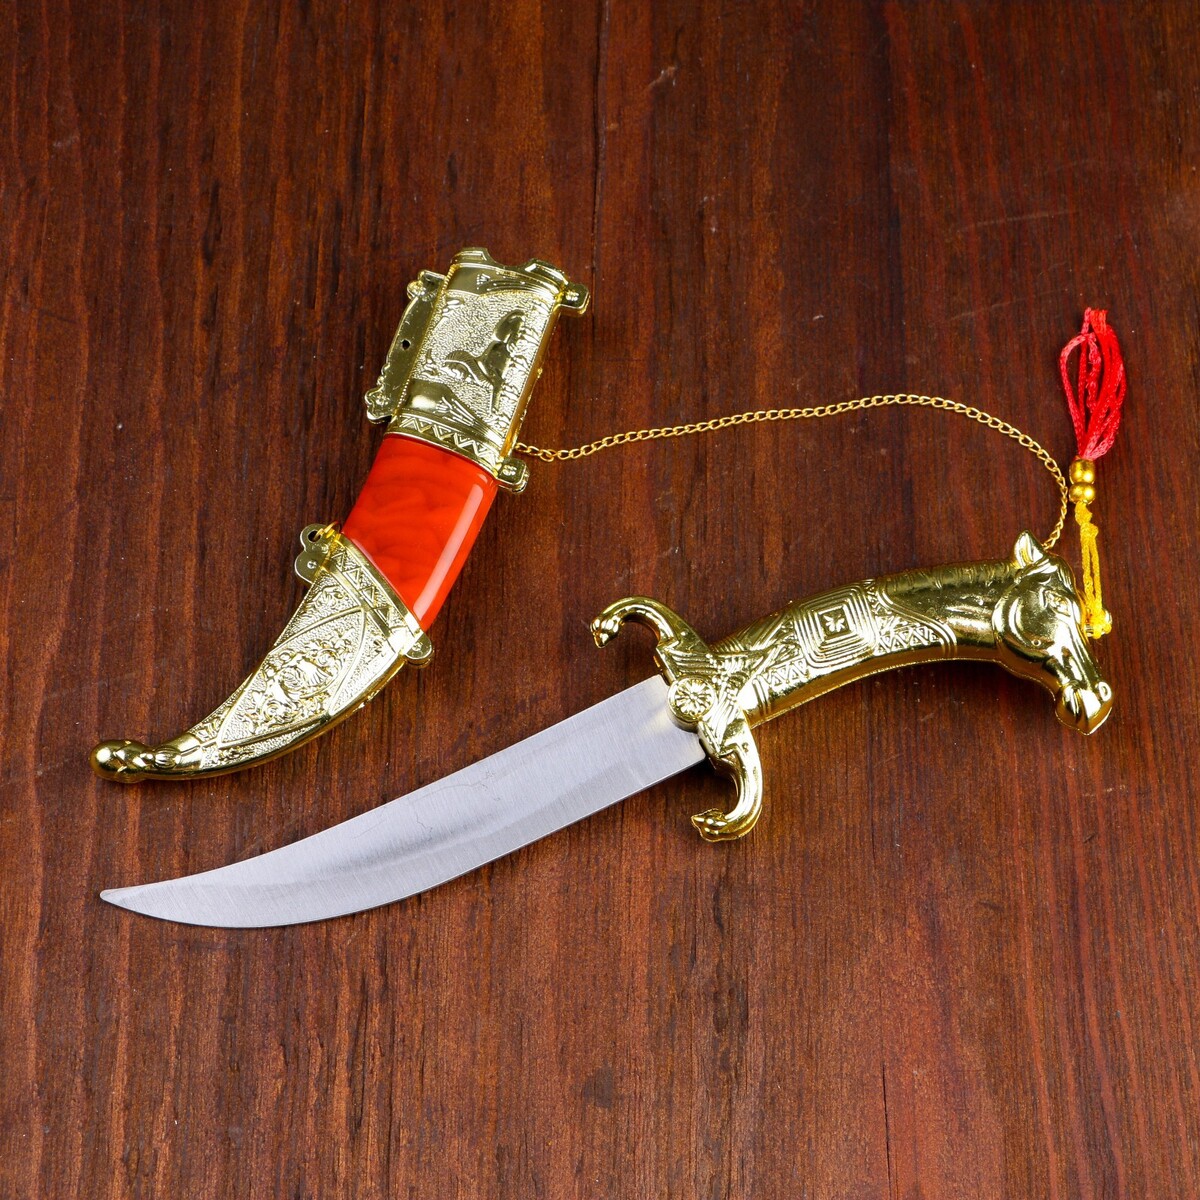 Сув. изделие нож, ножны серебро с красным, клинок 22 см сувенирный нож 24 5 см резные ножны дракон на рукояти